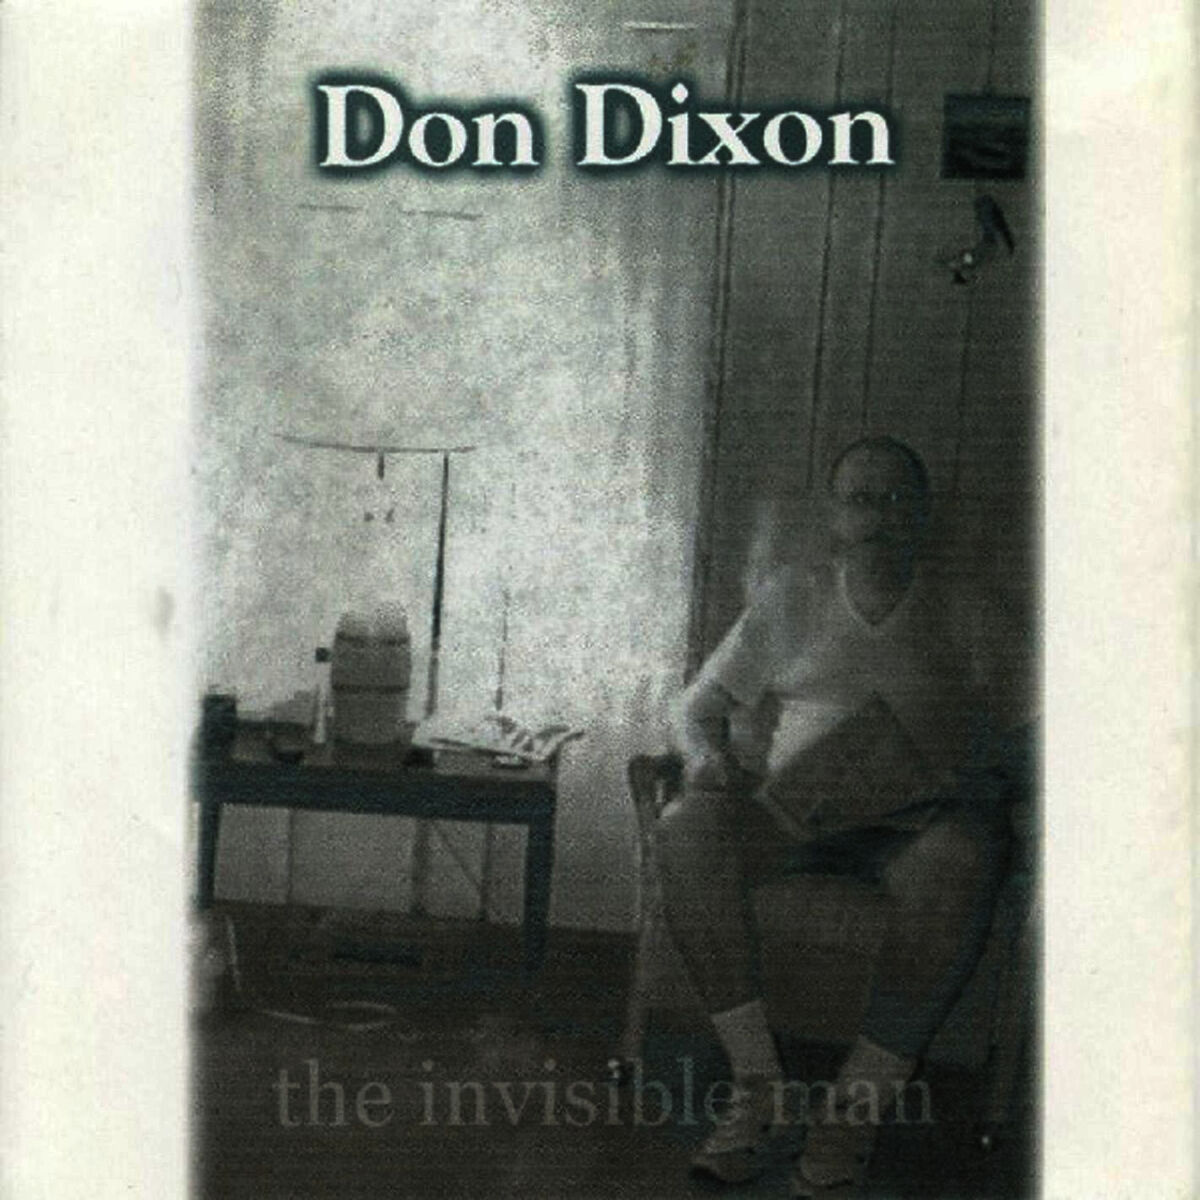 Don Dixon: albums